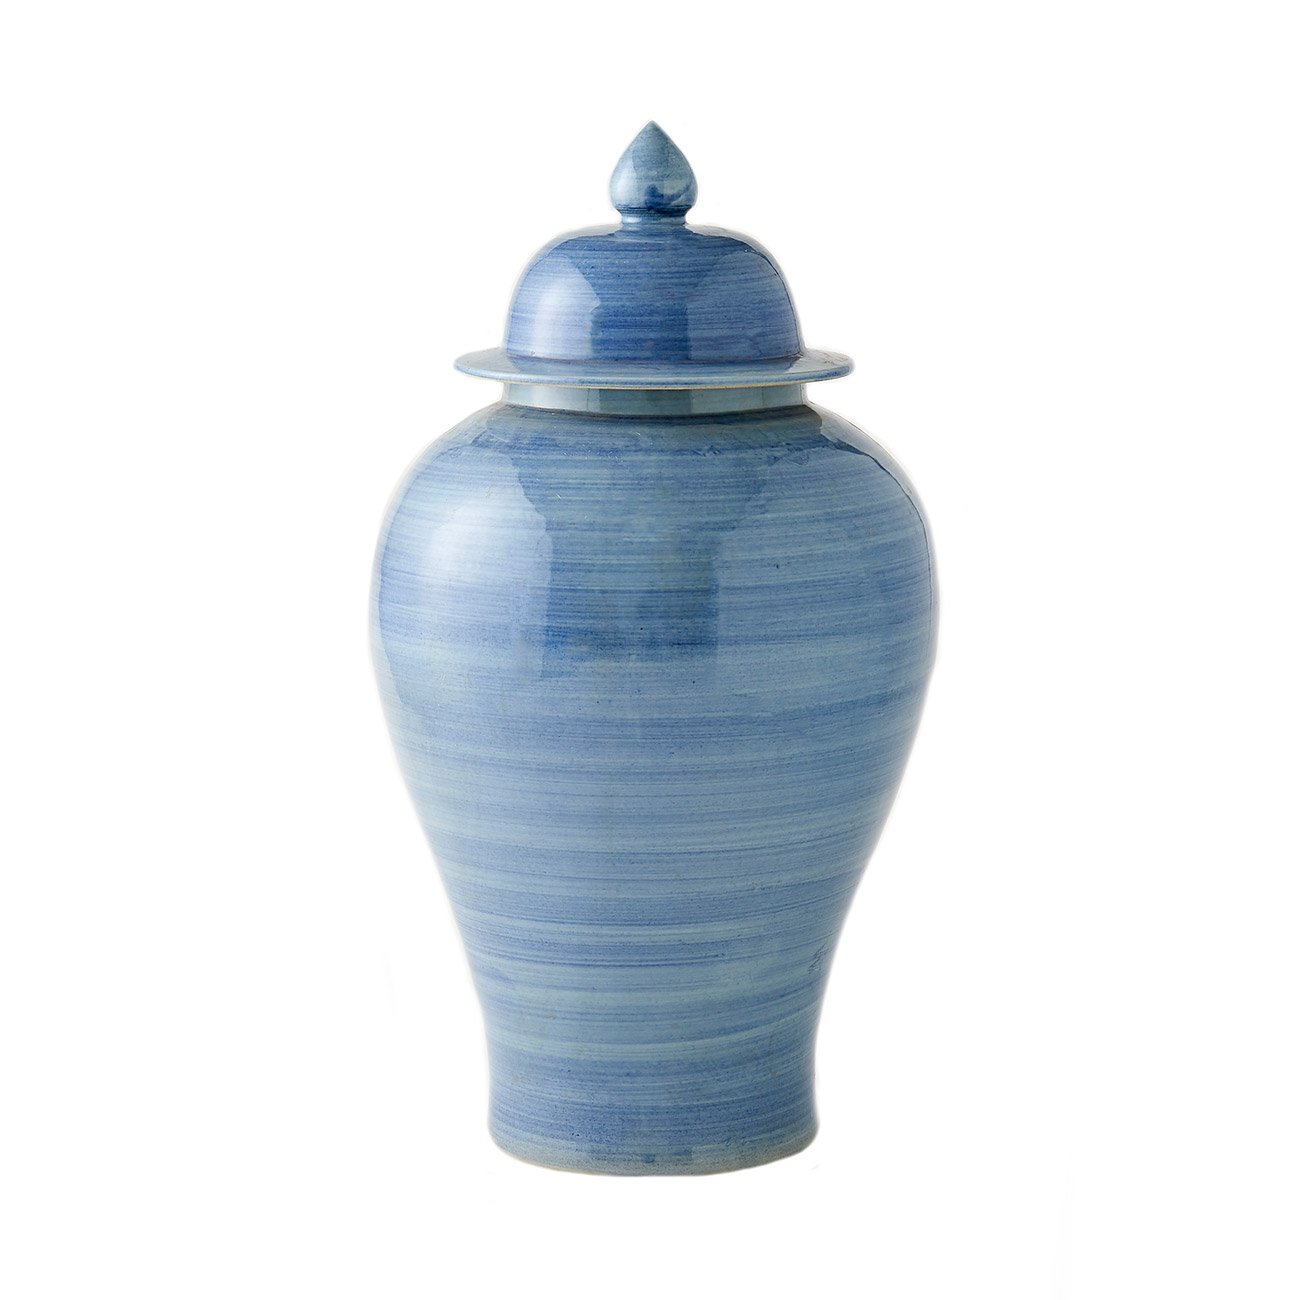 Porcelain Paintbrush Temple Jar